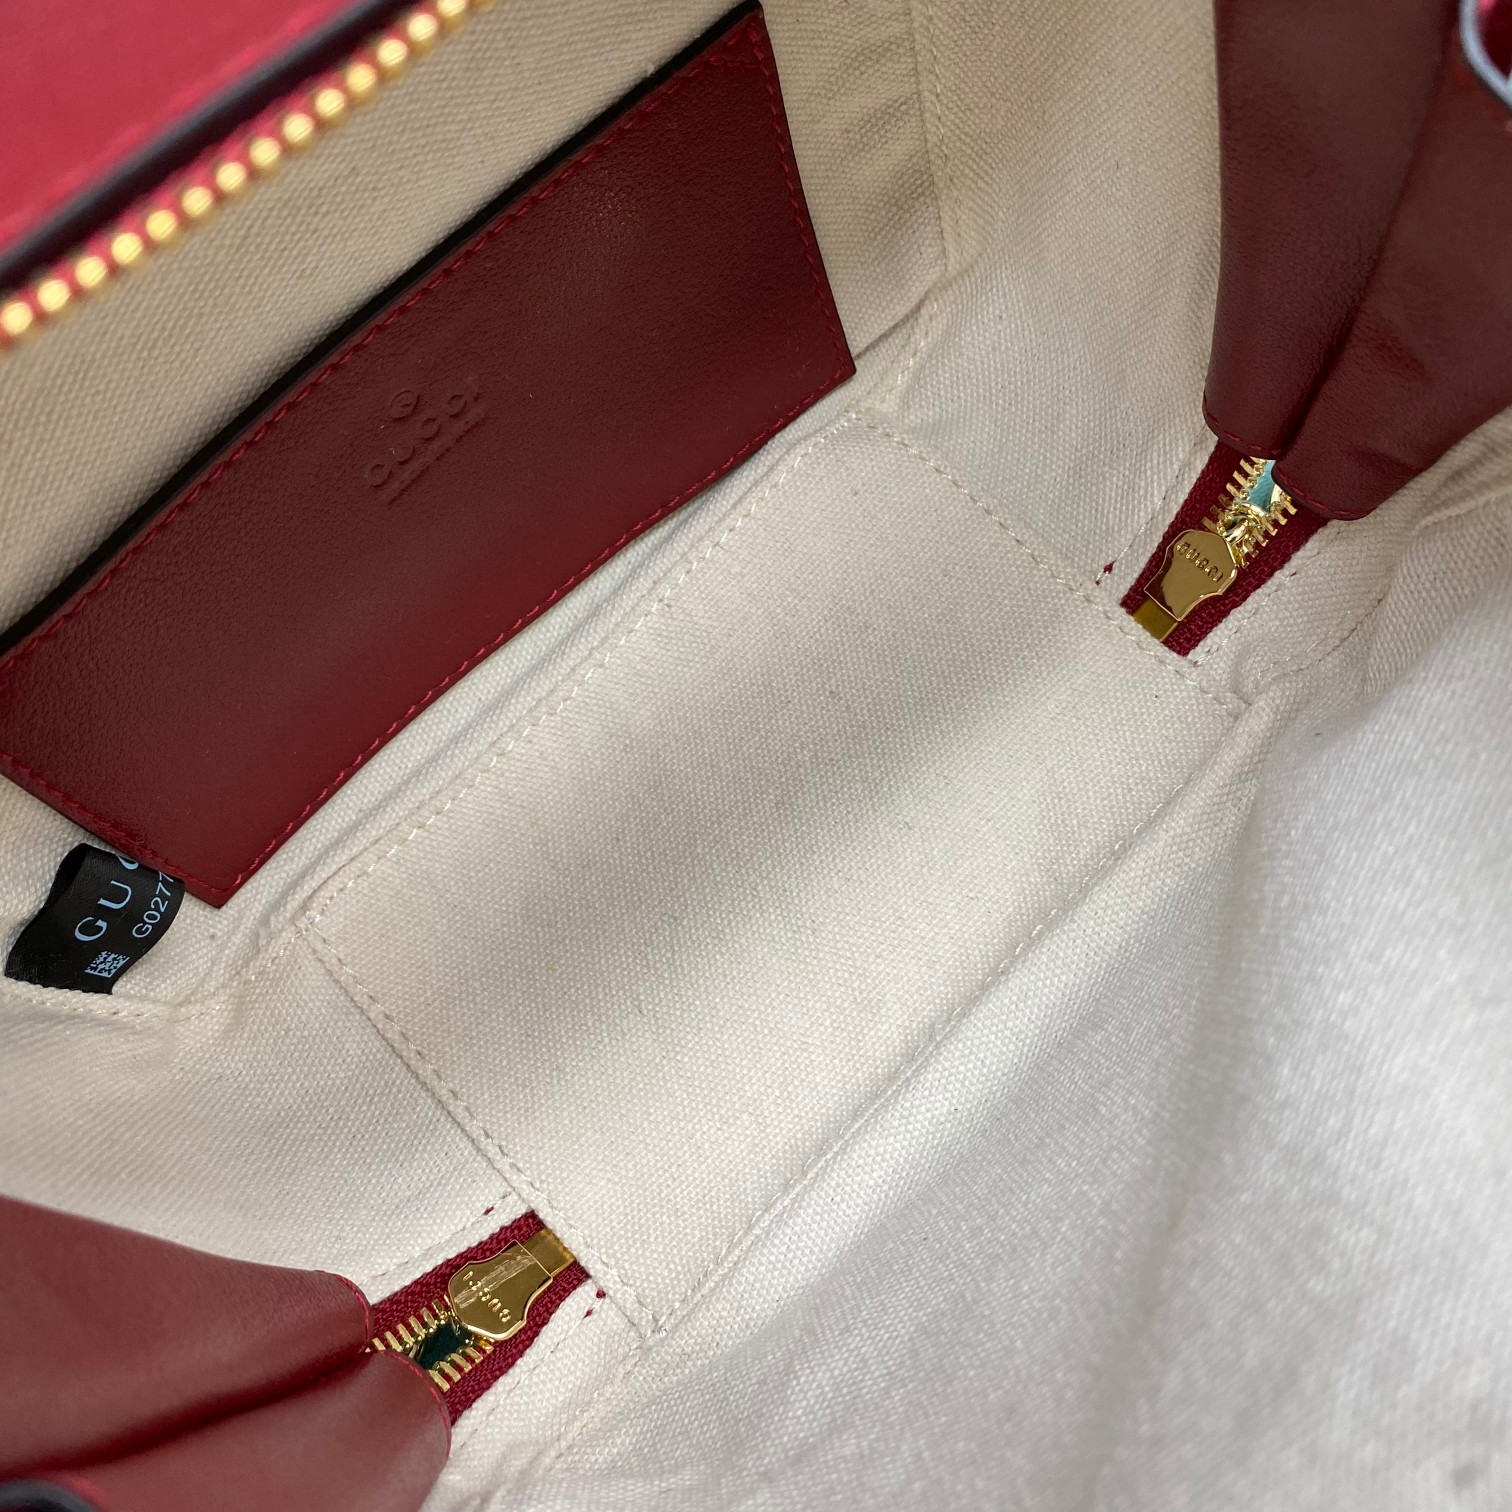 【P1320】Gucci Blondie系列小方包 古驰744434酒红色立体浮雕双G手提包